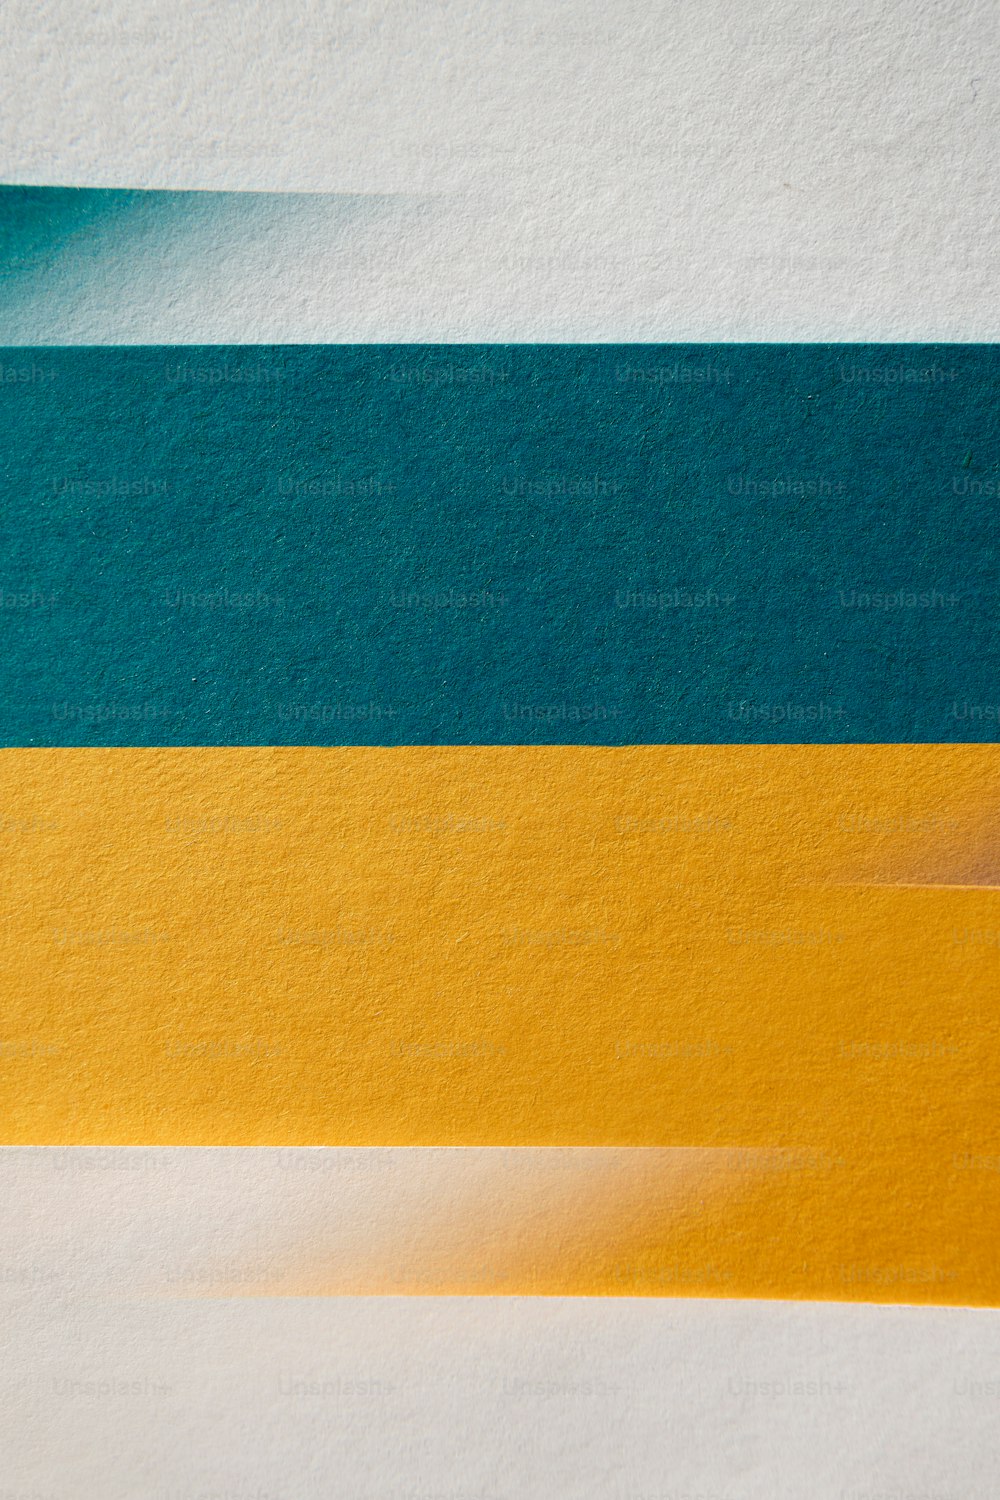 黄色と青の帯が付いた紙のクローズアップ